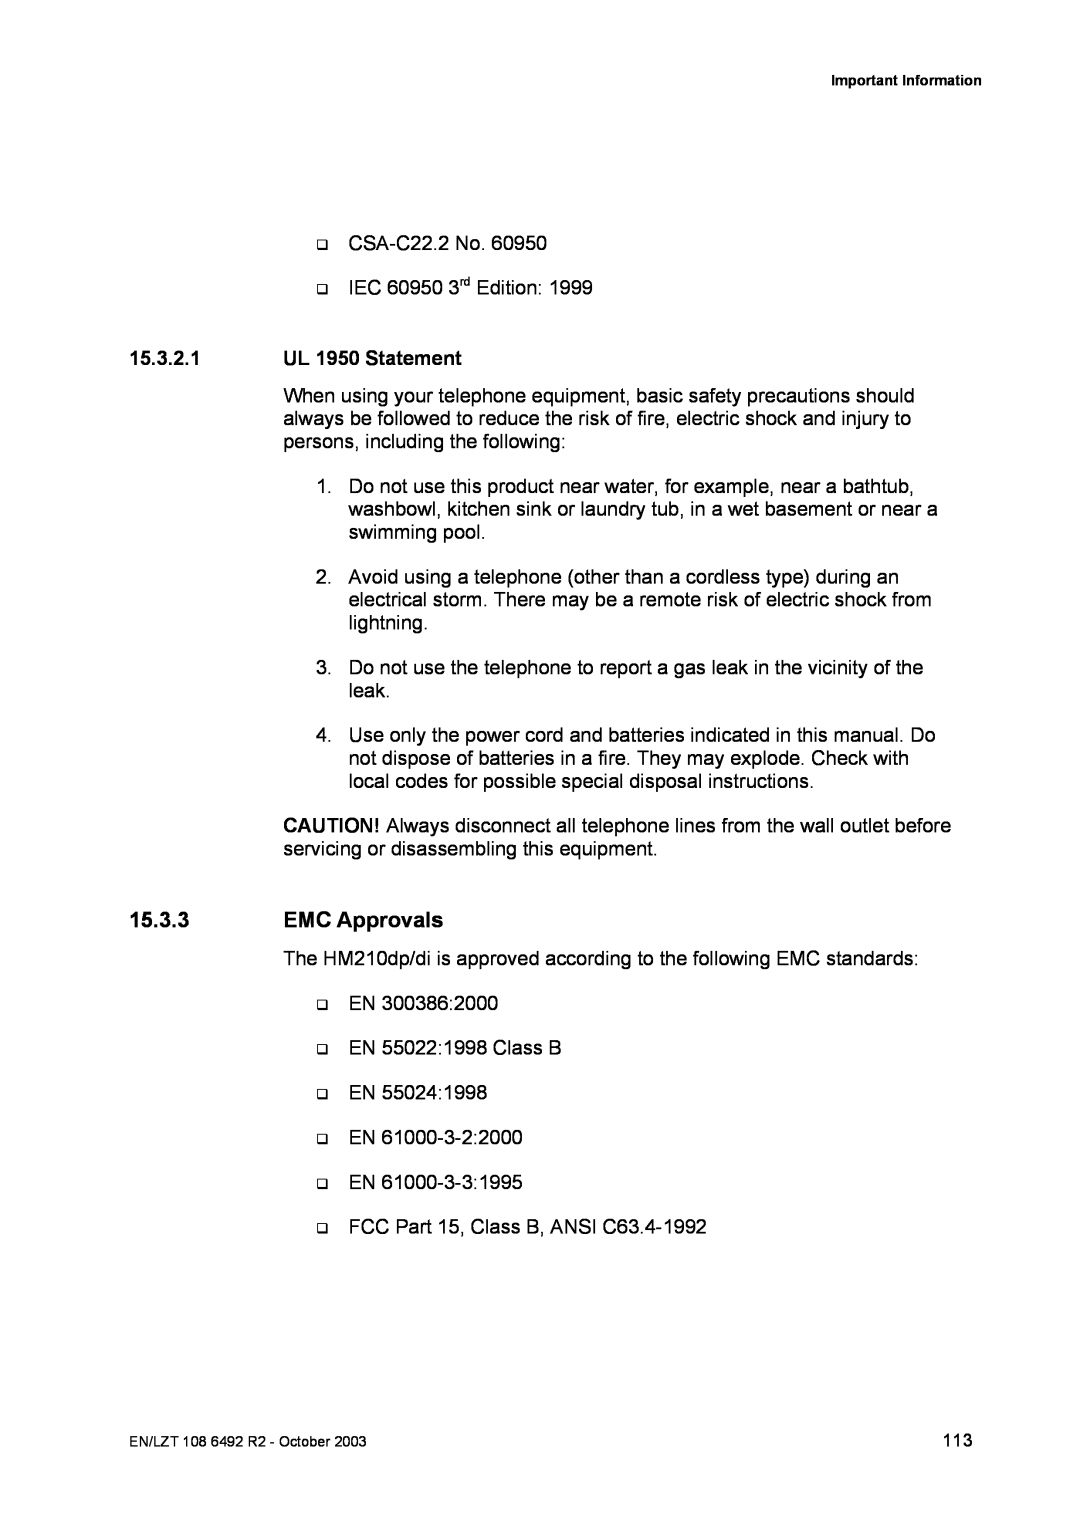 Garmin HM210DP/DI manual EMC Approvals, 15.3.2.1 UL 1950 Statement 